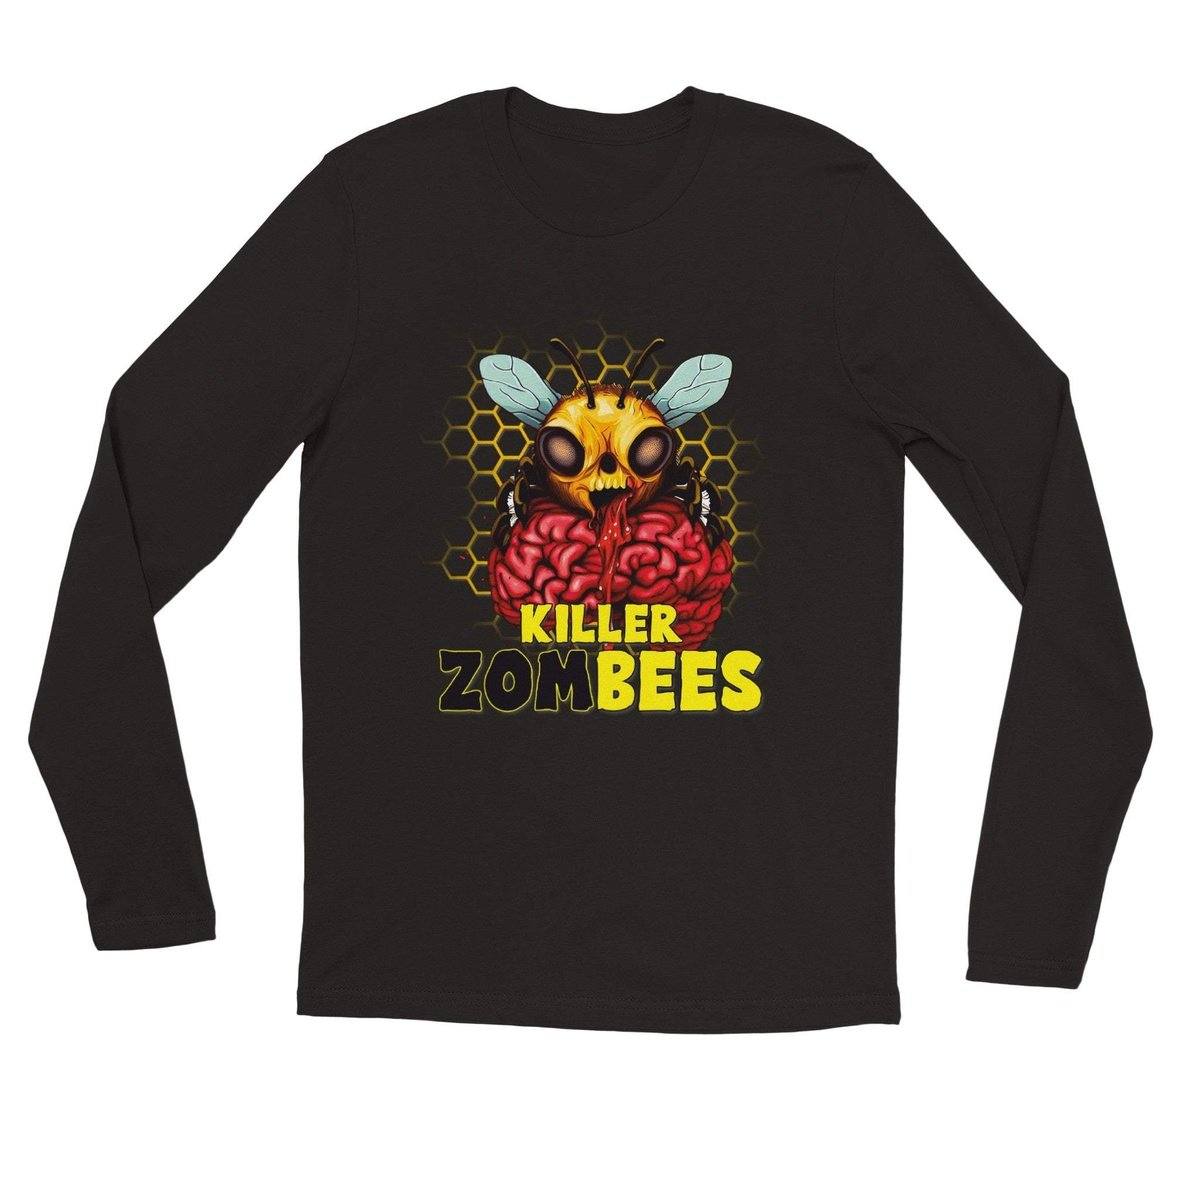 Killer Zombees - Premium Unisex Longsleeve T-shirt Australia Online Color